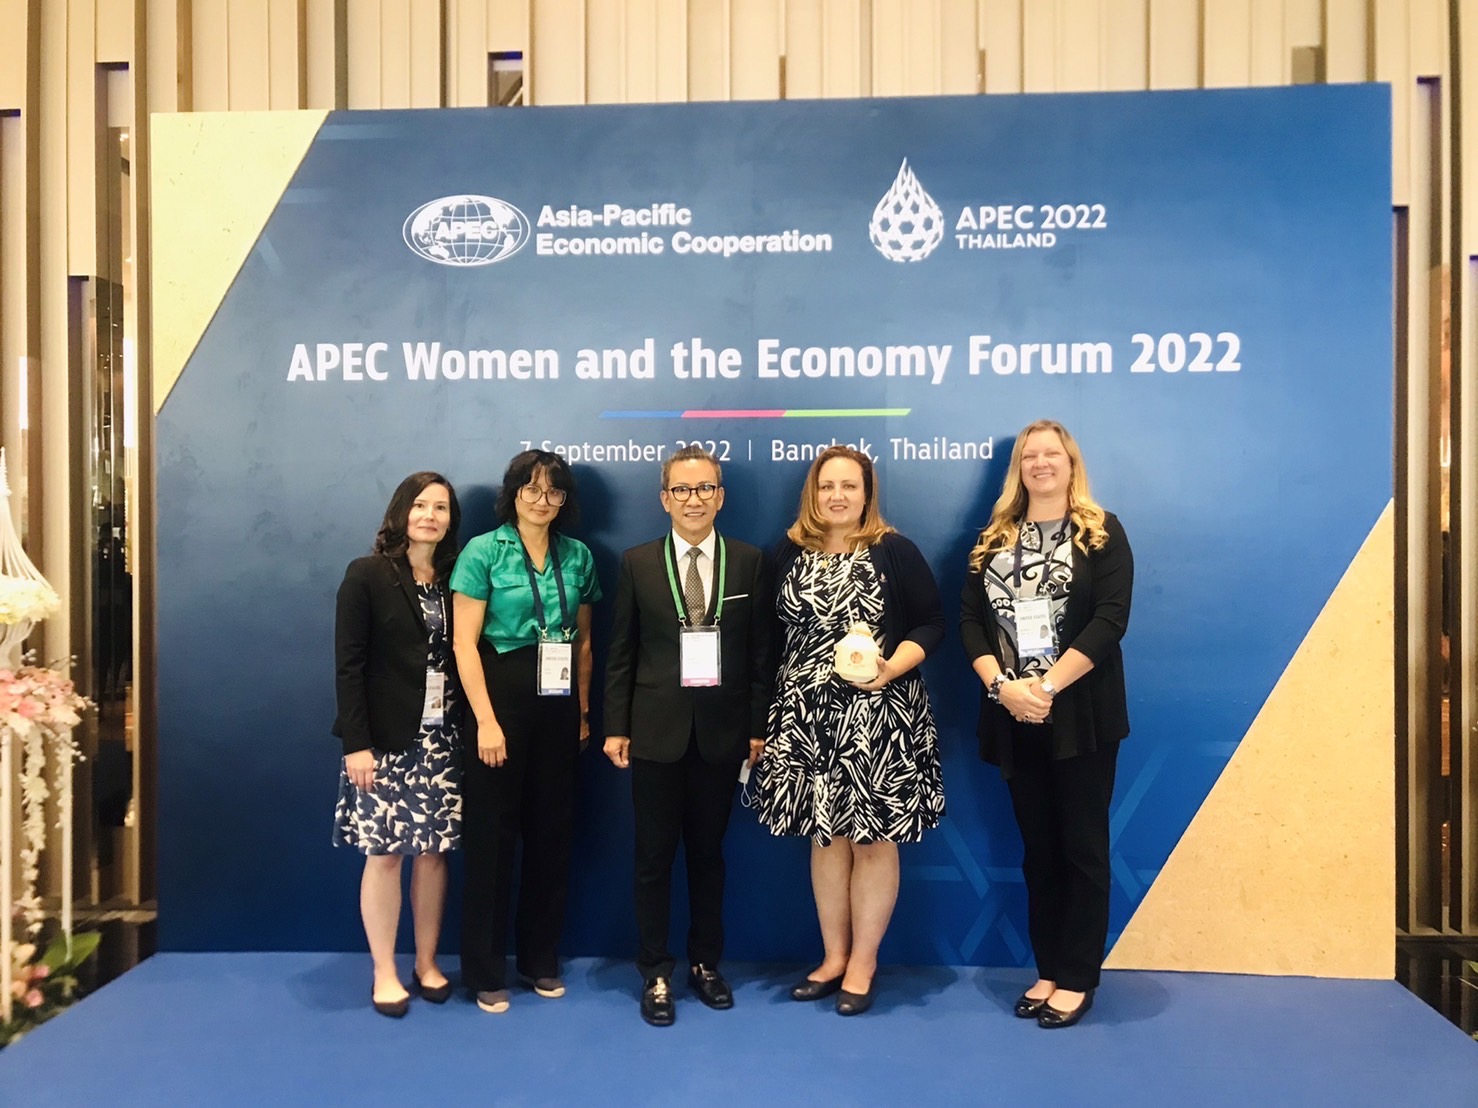 ดร.สมศักดิ์ ชลาชล นายกสมาคมวิชาชีพช่างทำผมไทย ร่วมต้อนรับ ผู้นำสตรีนานาชาติในการประชุม APEC WOMEN AND THE ECONOMY FORUM 2022